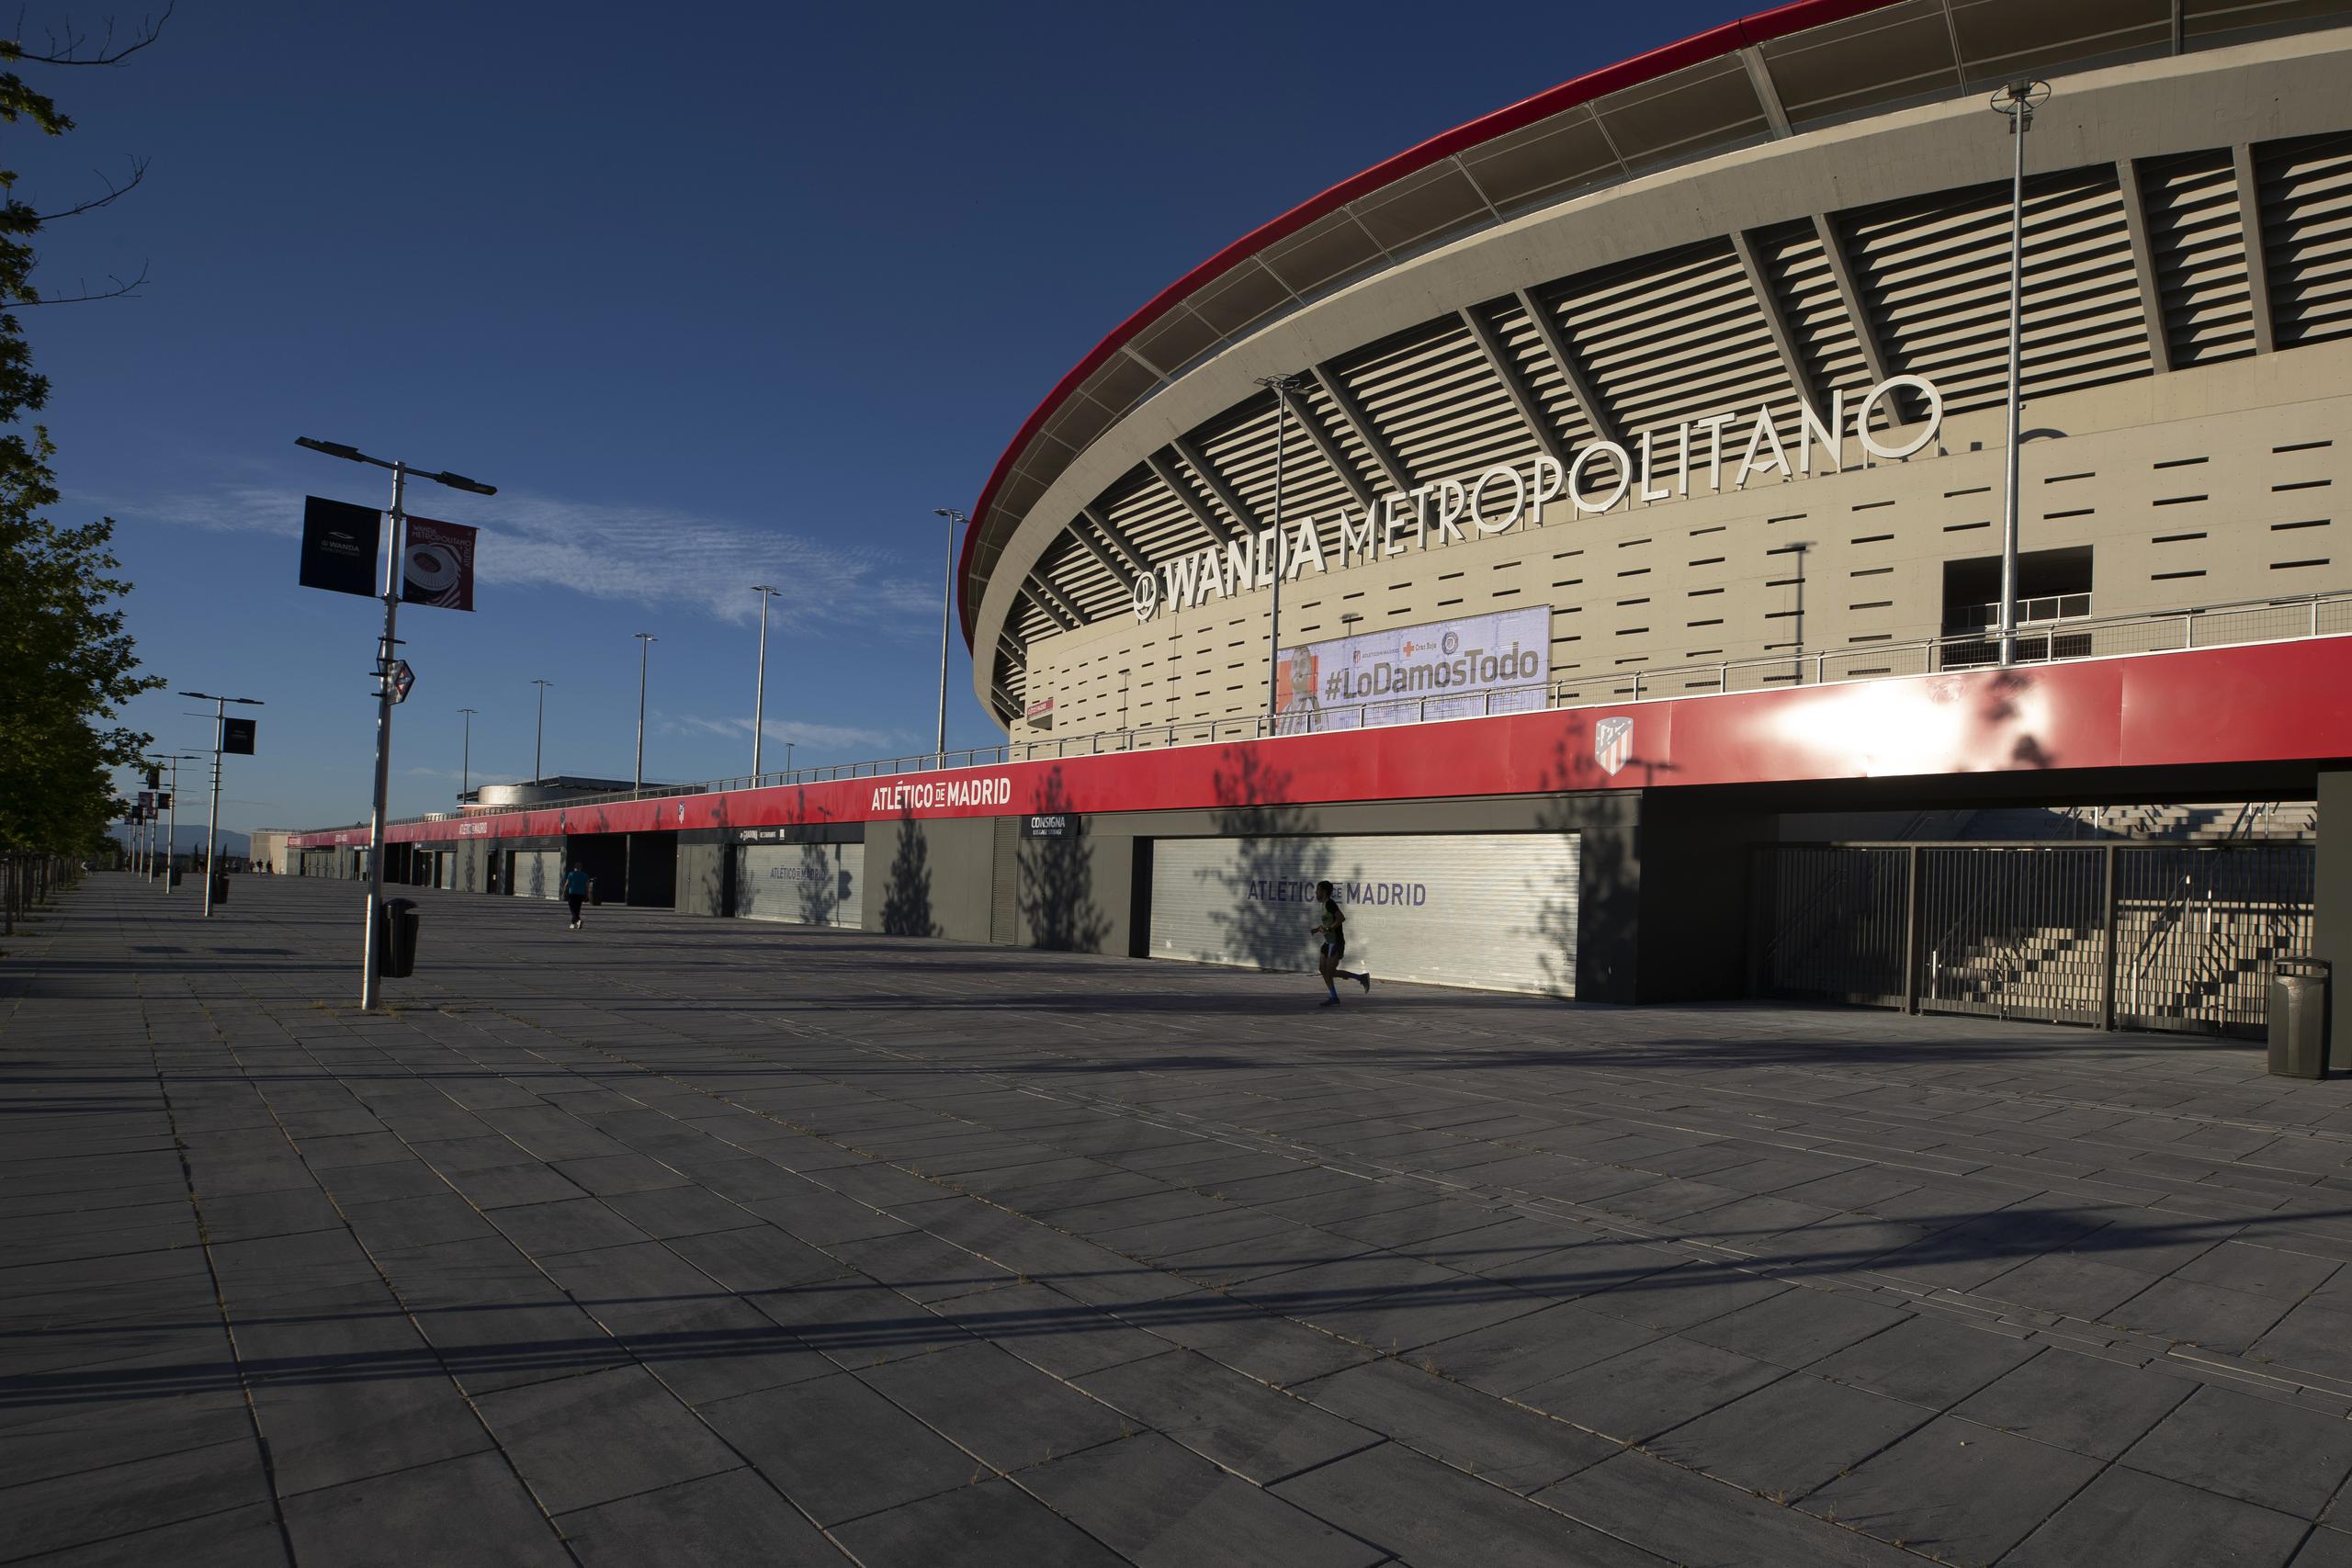 El alcalde de Madrid José Luis Martínez-Almeida dijo que la ciudad está entusiasmada de recibir la final de la Liga de Campeones en agosto si la UEFA decide cambiar la sede original de Estambul.